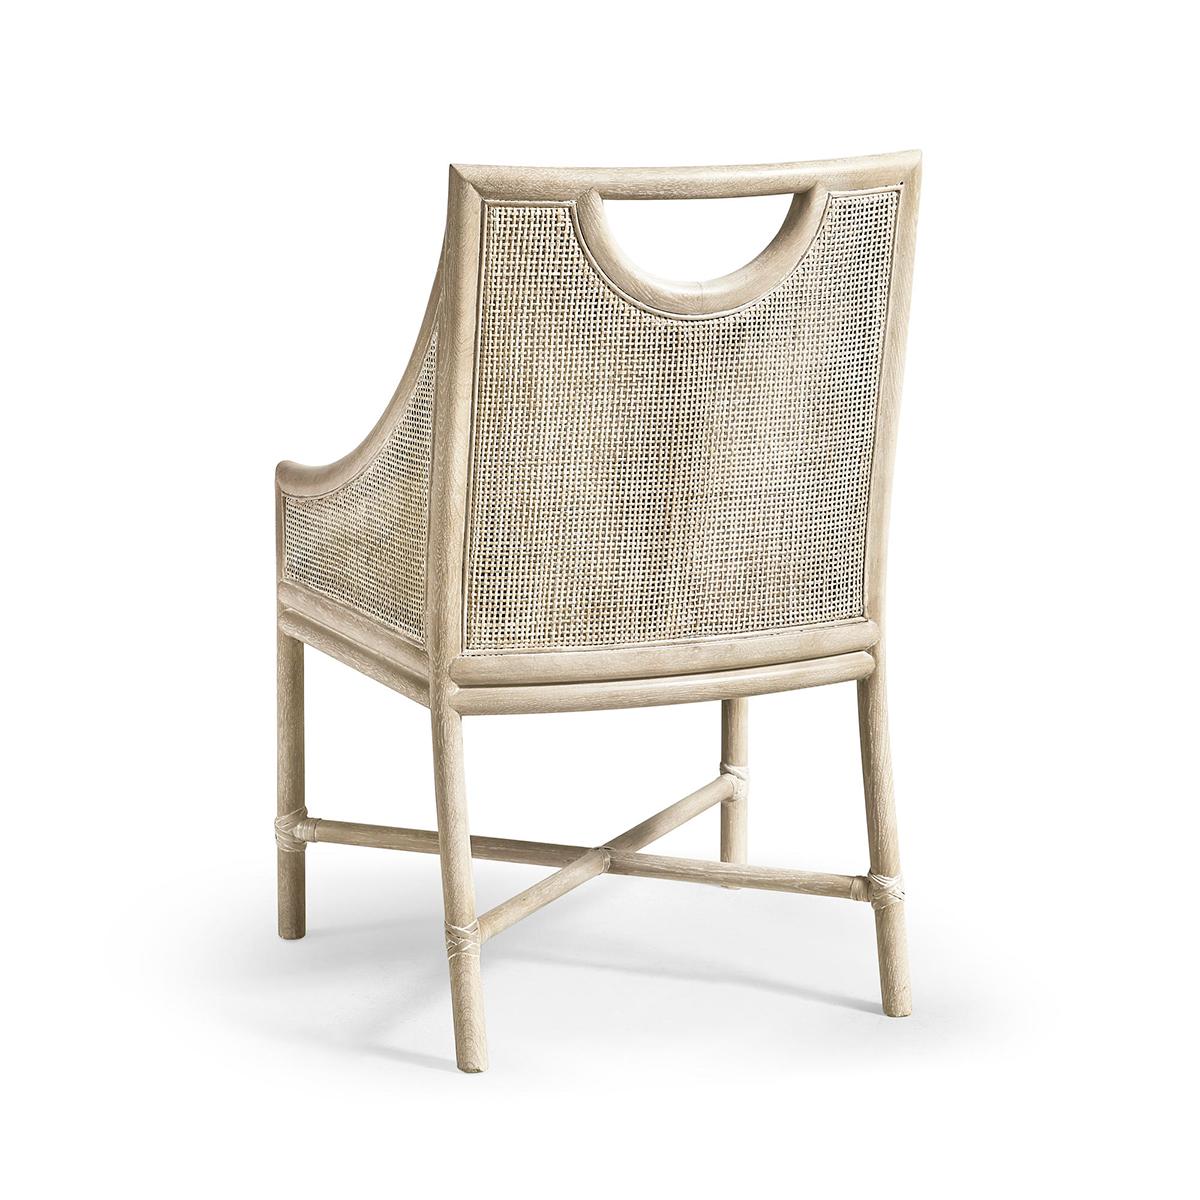 Dieser Stuhl, der jeden Essbereich aufwertet, besteht aus einem massiven Eichenholzrahmen, der mit klassischem Rohrgeflecht verziert ist, das eine Schicht natürlicher Schönheit und Textur verleiht.

Die Verwendung von Eichenholz und Schilfrohr